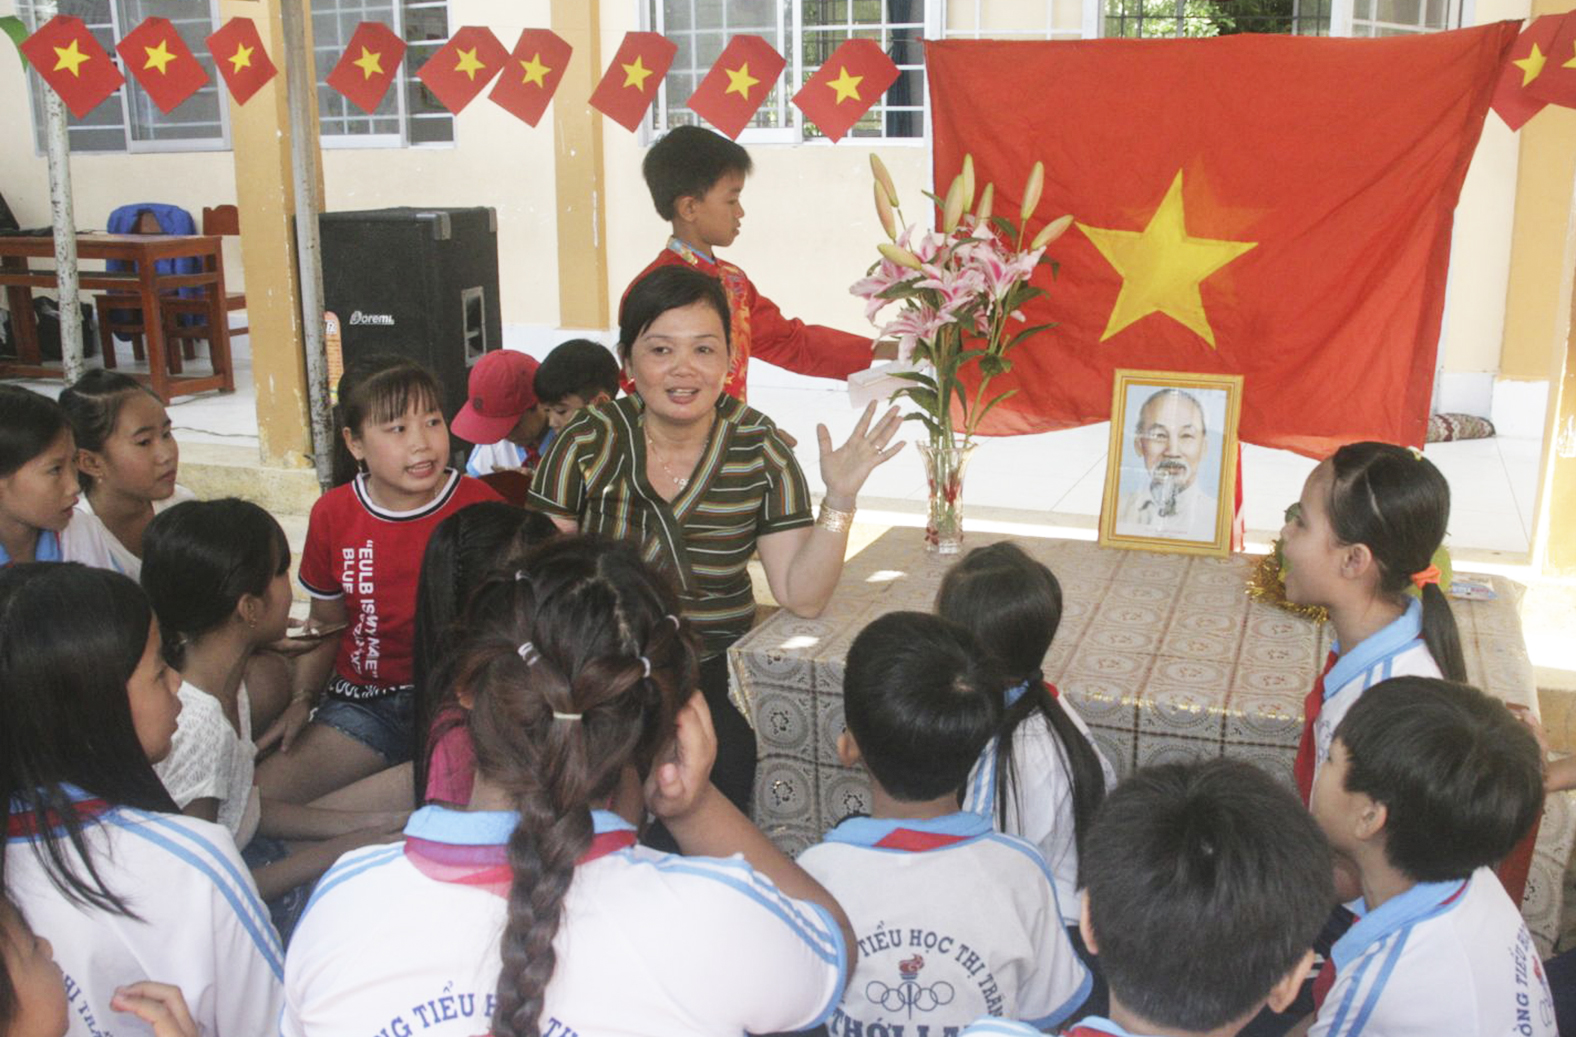 Đội viên Trường Tiểu học thị trấn Thới Lai 2, huyện Thới Lai, tham gia sinh hoạt truyền thống, tìm hiểu về Kim Đồng tại Ngày hội “Thiếu nhi khỏe - Tiến bước lên Đoàn”. Ảnh: Q. THÁI